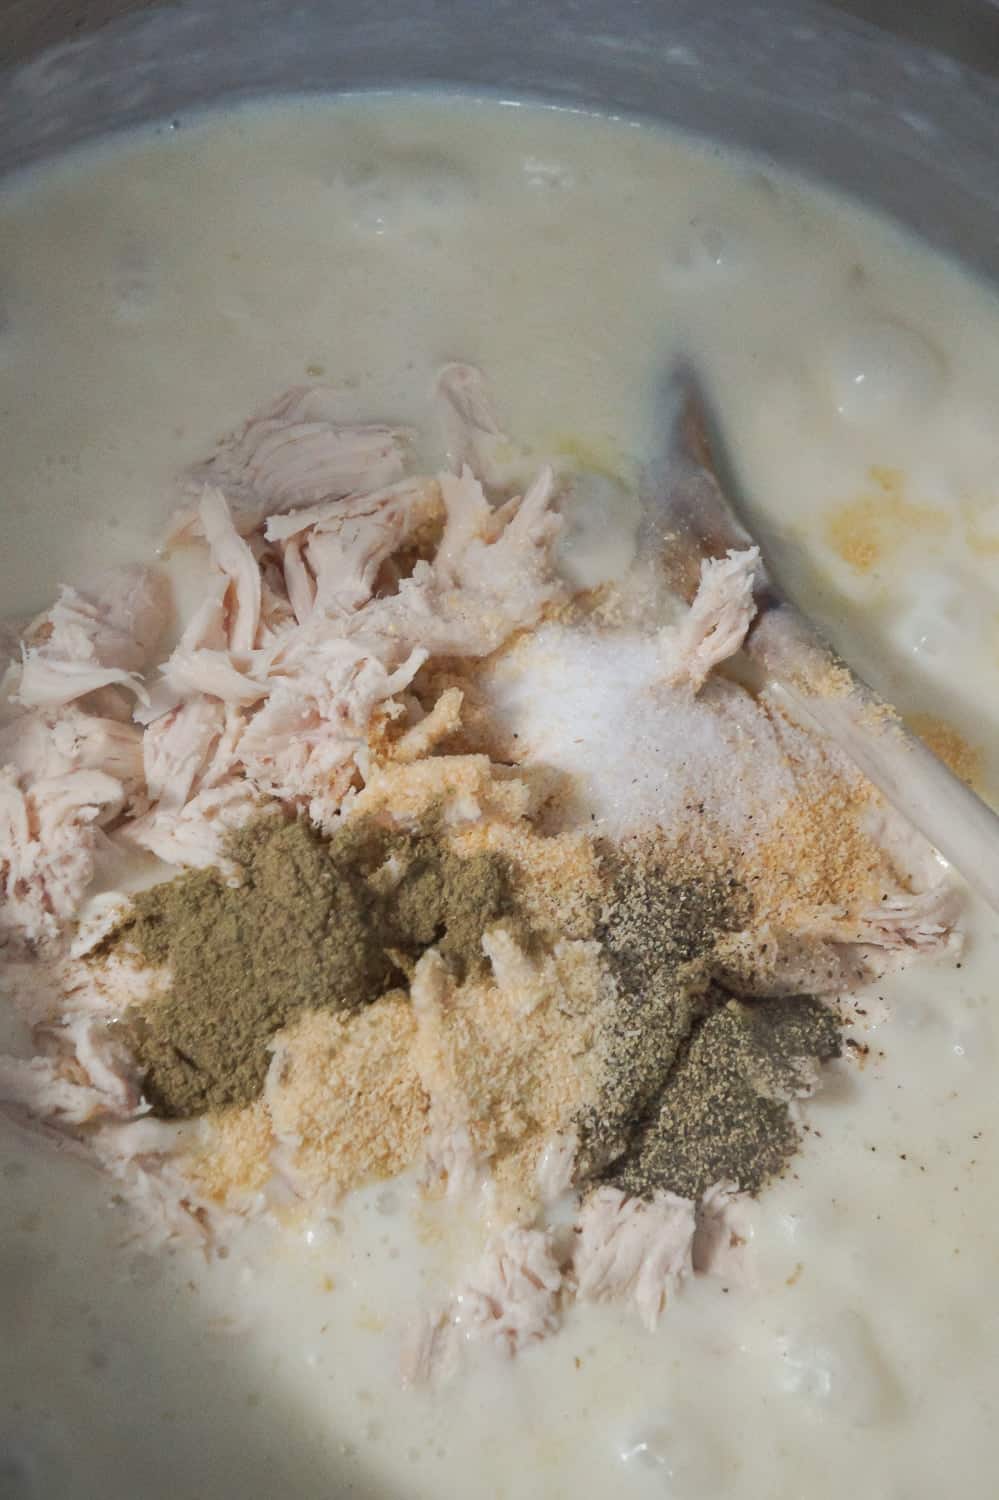 rotisserie chicken, salt, pepper, sage, onion powder and garlic powder added to soup